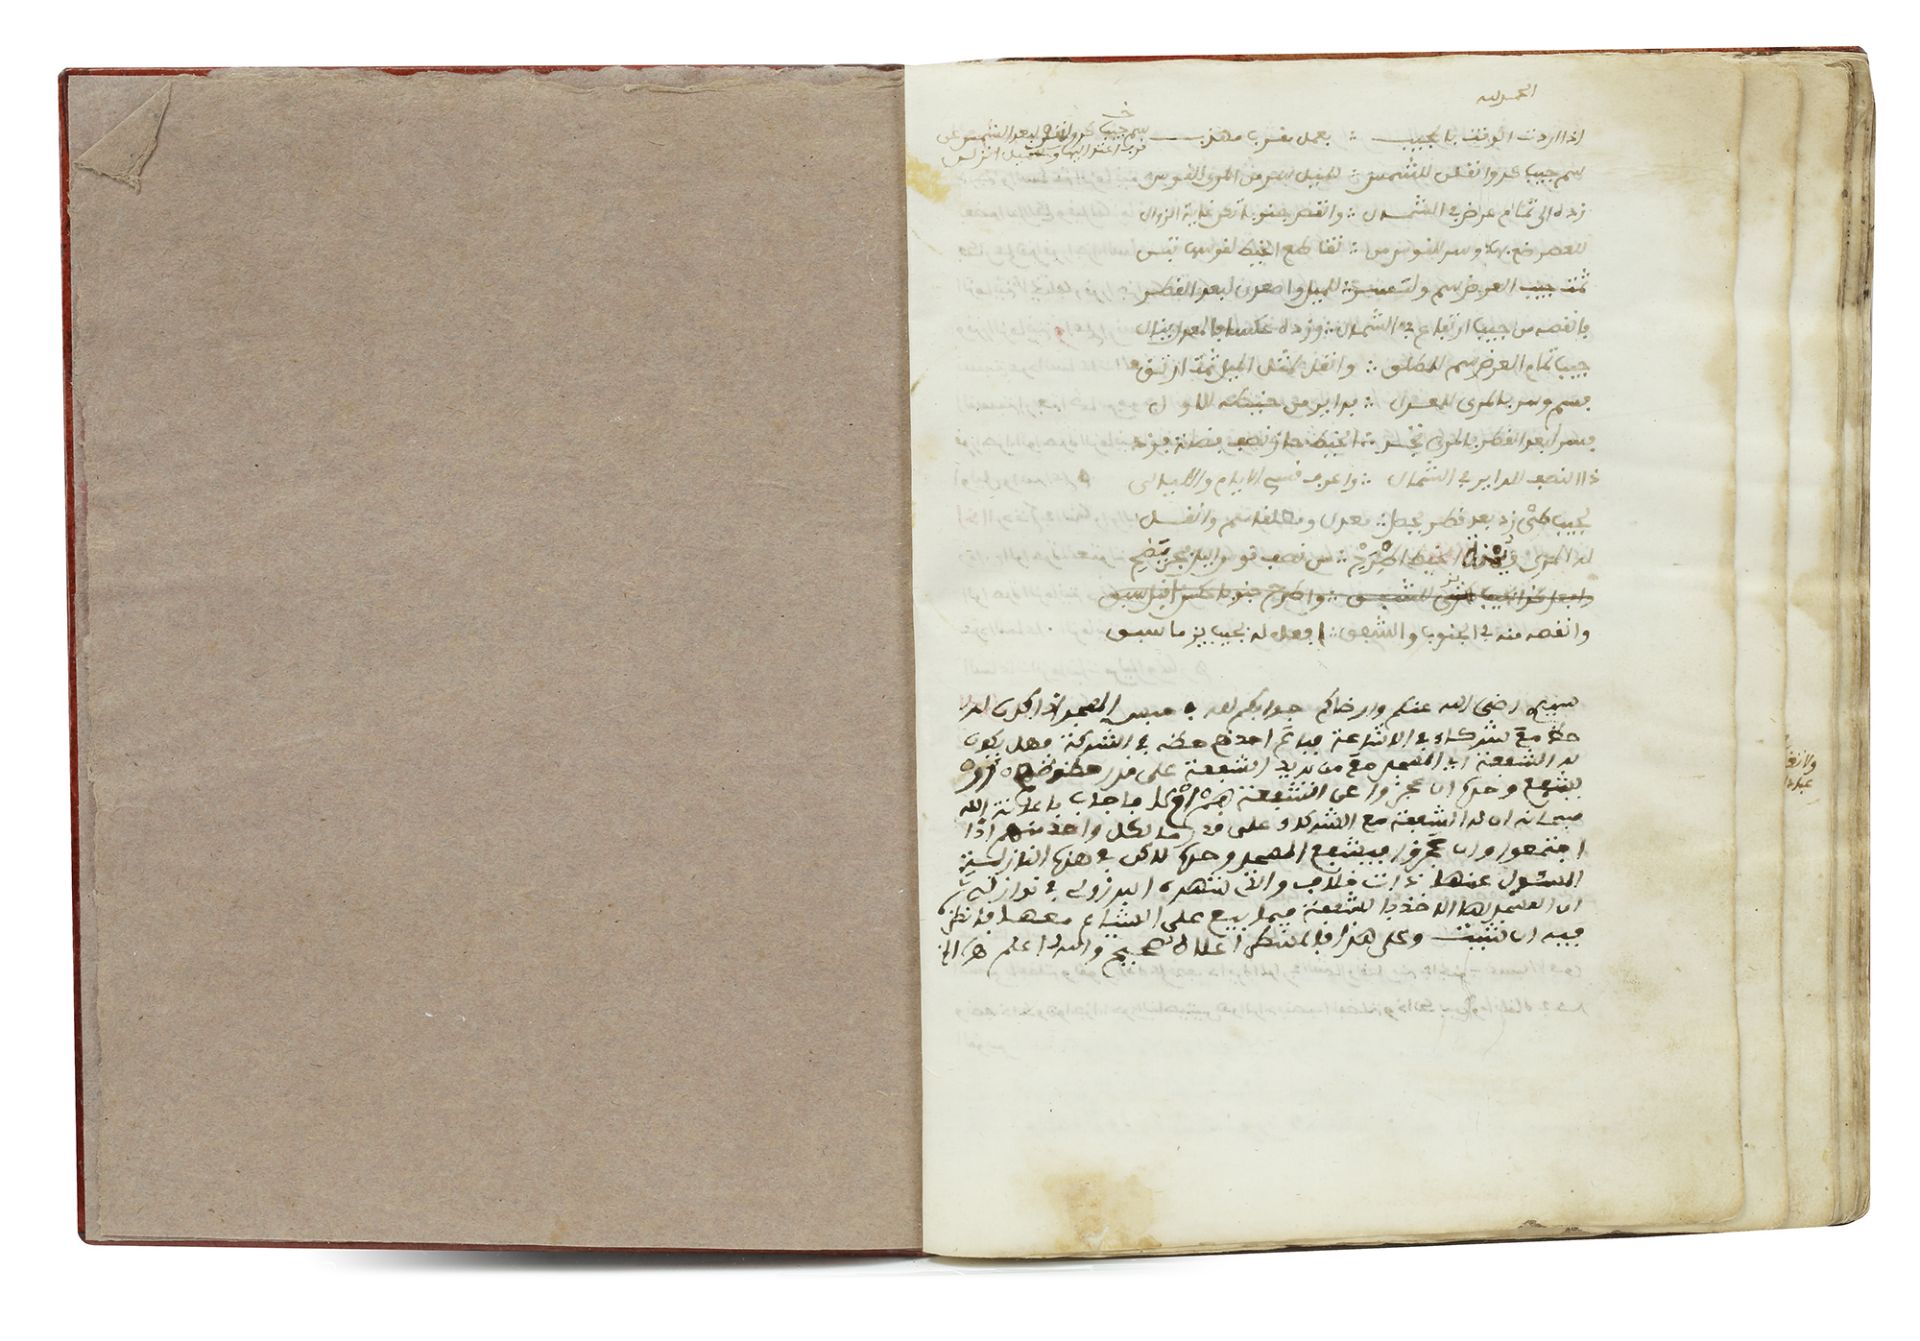 SHARH AL-MUQNI FI ILM ABI MUQRI BY MIRGITI, COPIED IN 1122 AH/1710 AD - Image 5 of 12